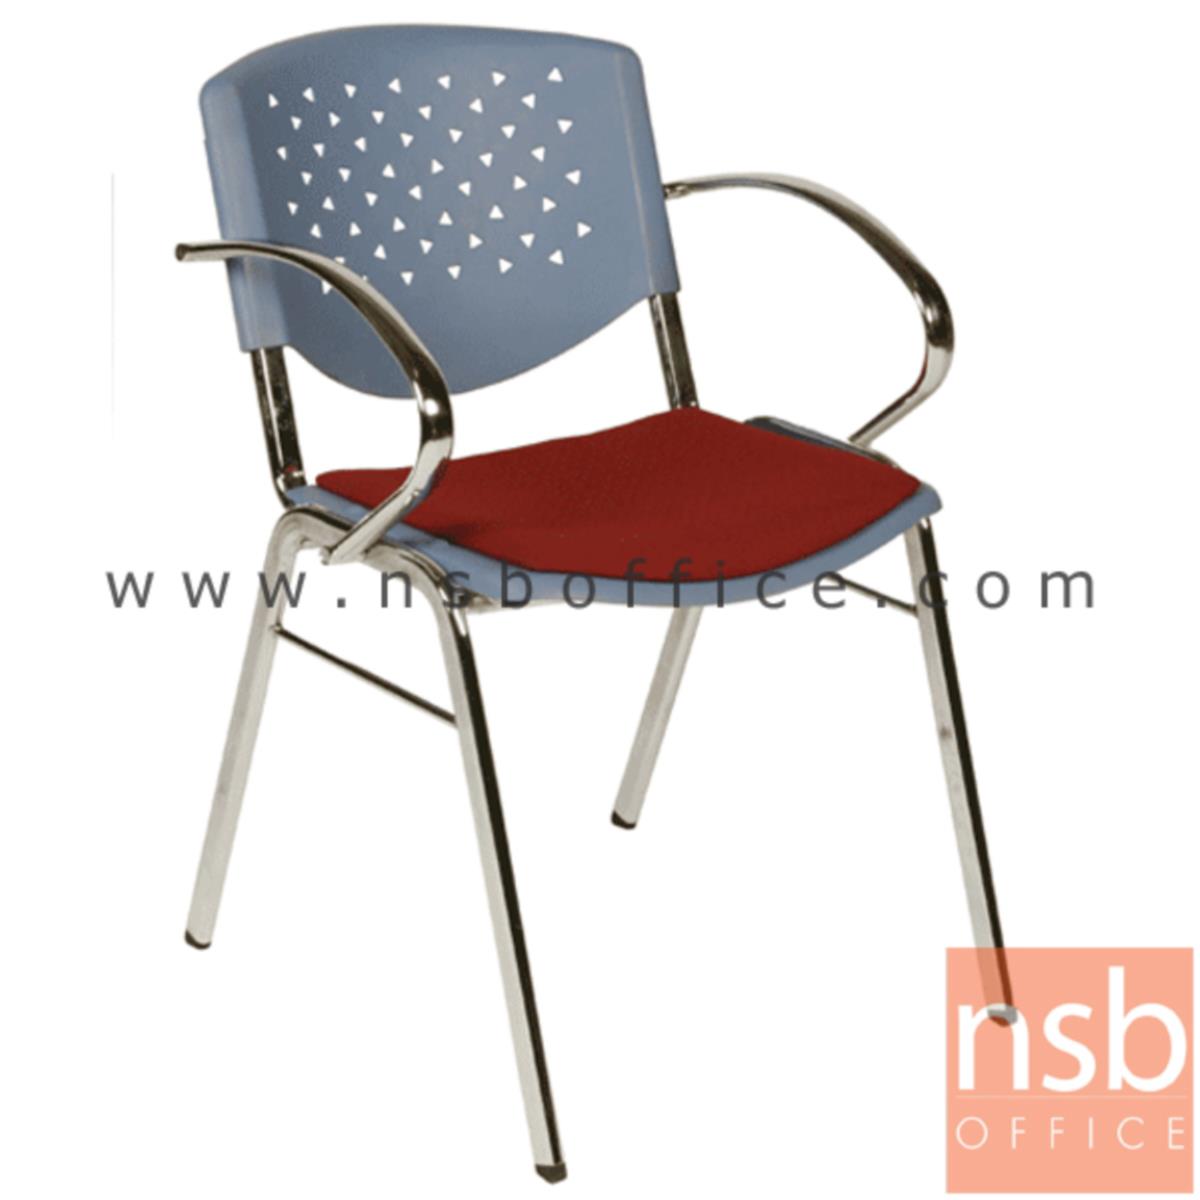 เก้าอี้อเนกประสงค์เฟรมโพลี่ รุ่น A136-526  ขาเหล็กชุบโครเมี่ยม